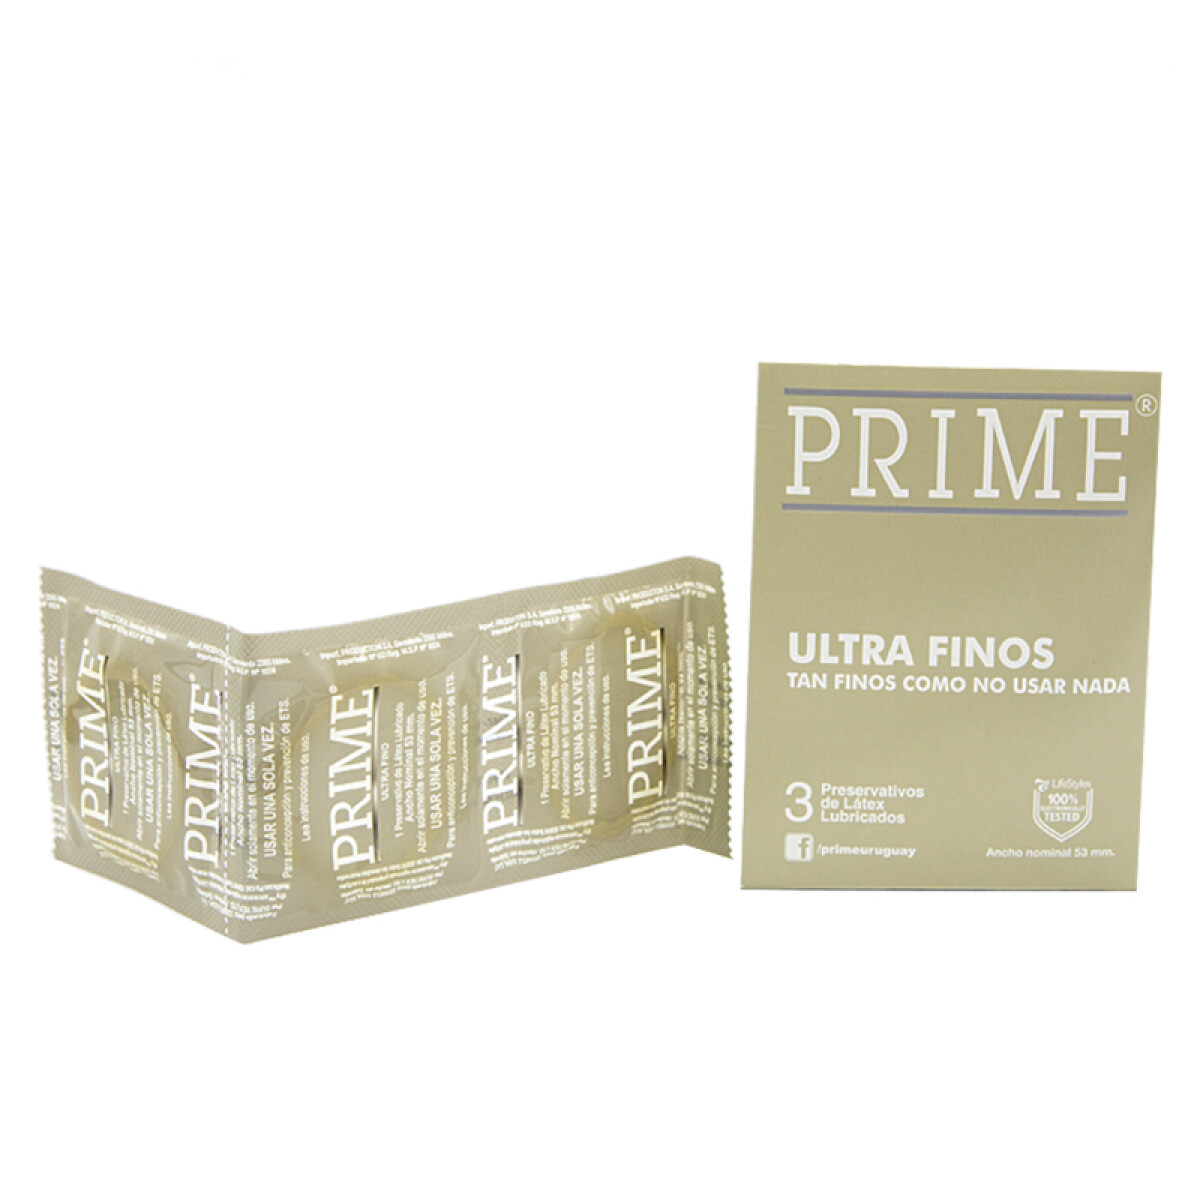 Preservativo PRIME Ultra Fino X3 